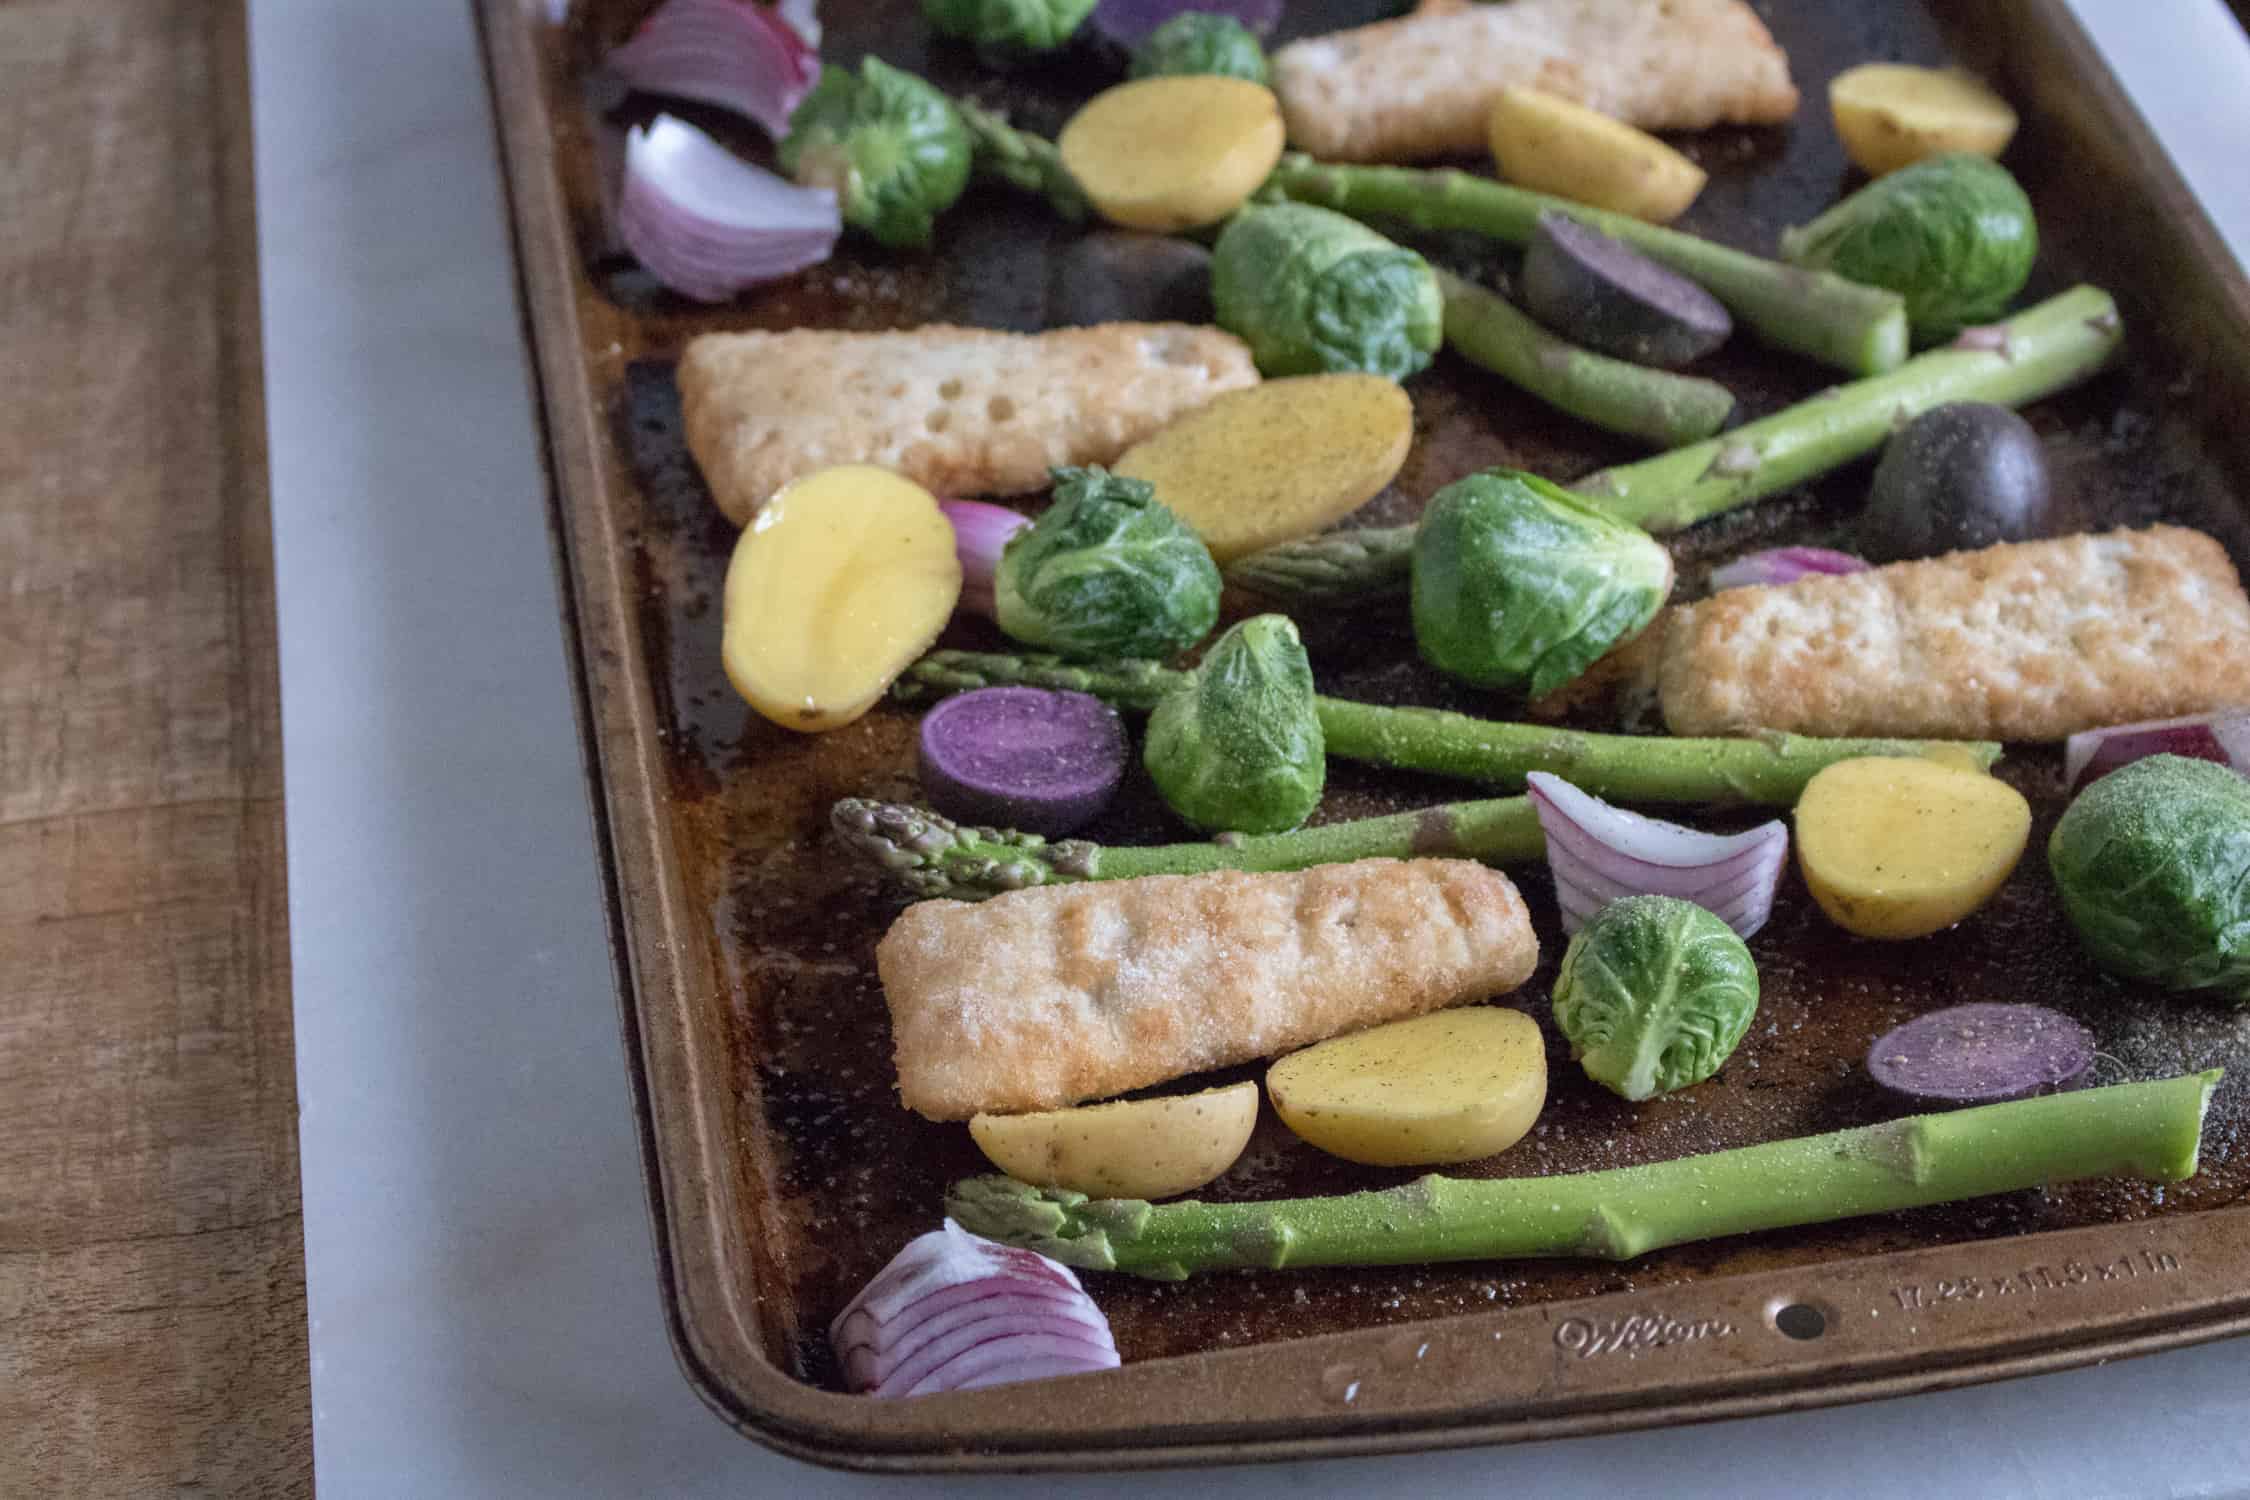 sheet pan veggies with fish fillets on a baking sheet